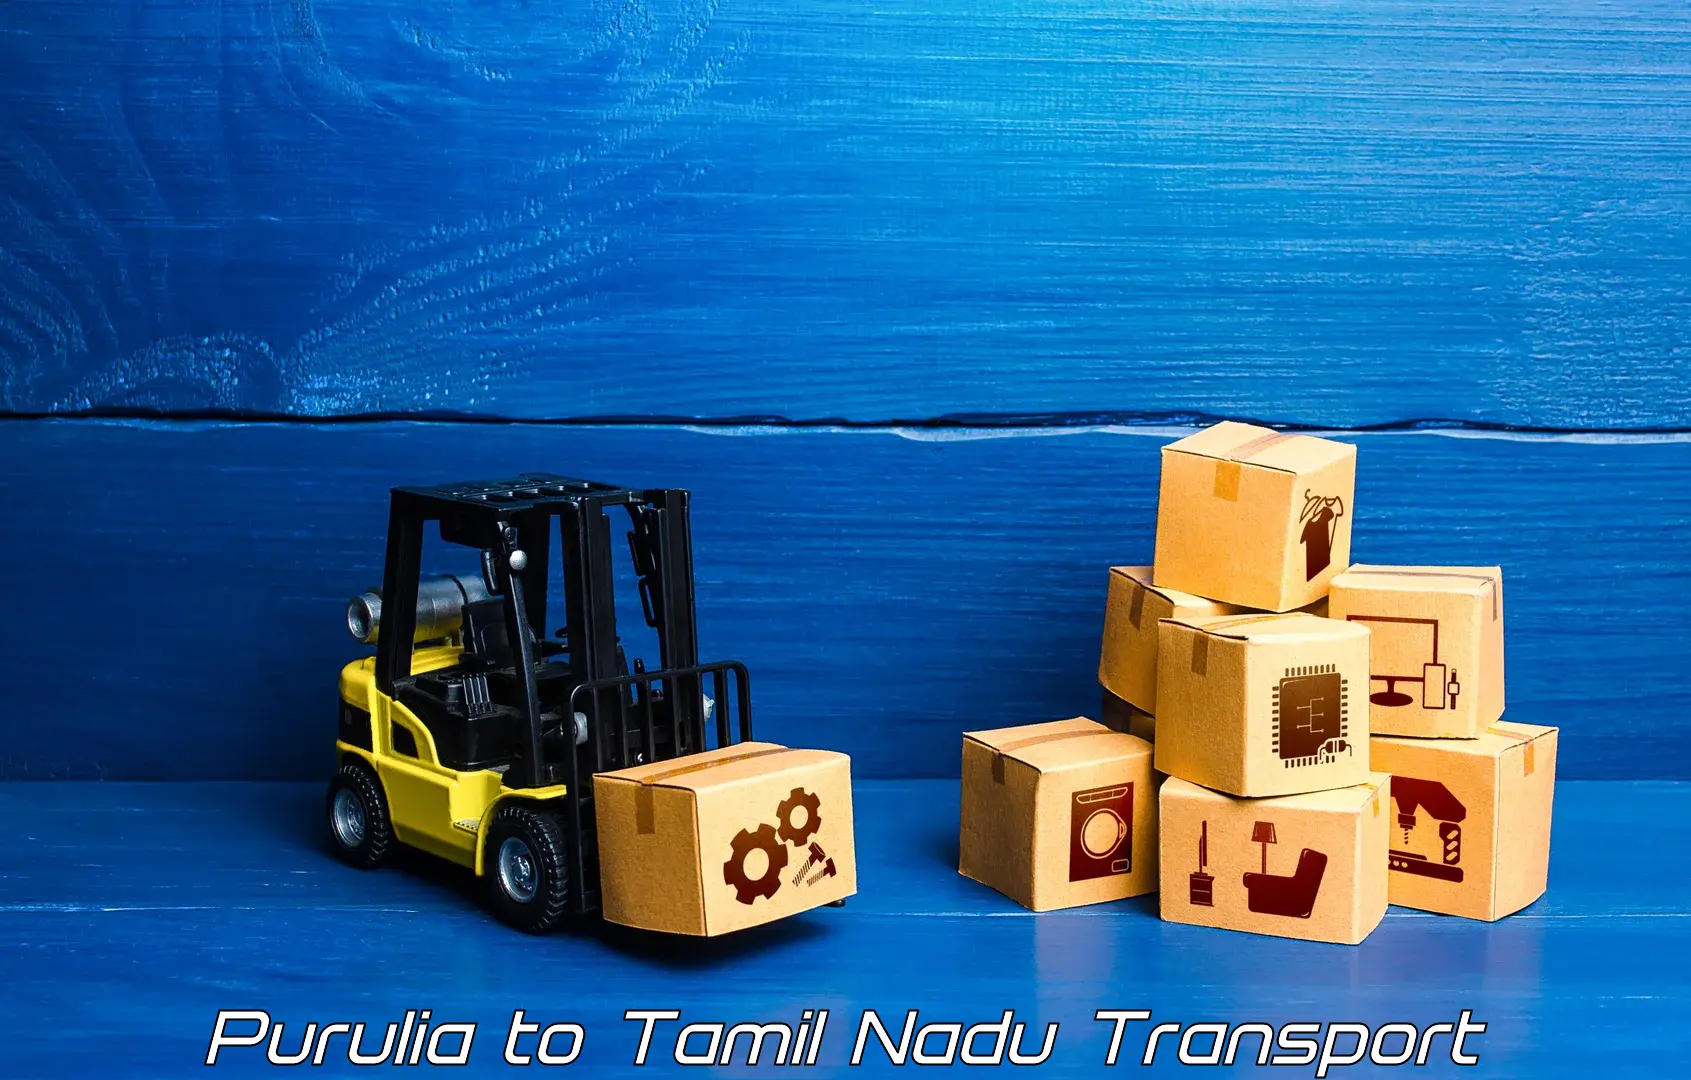 Cargo transport services Purulia to The Gandhigram Rural Institute